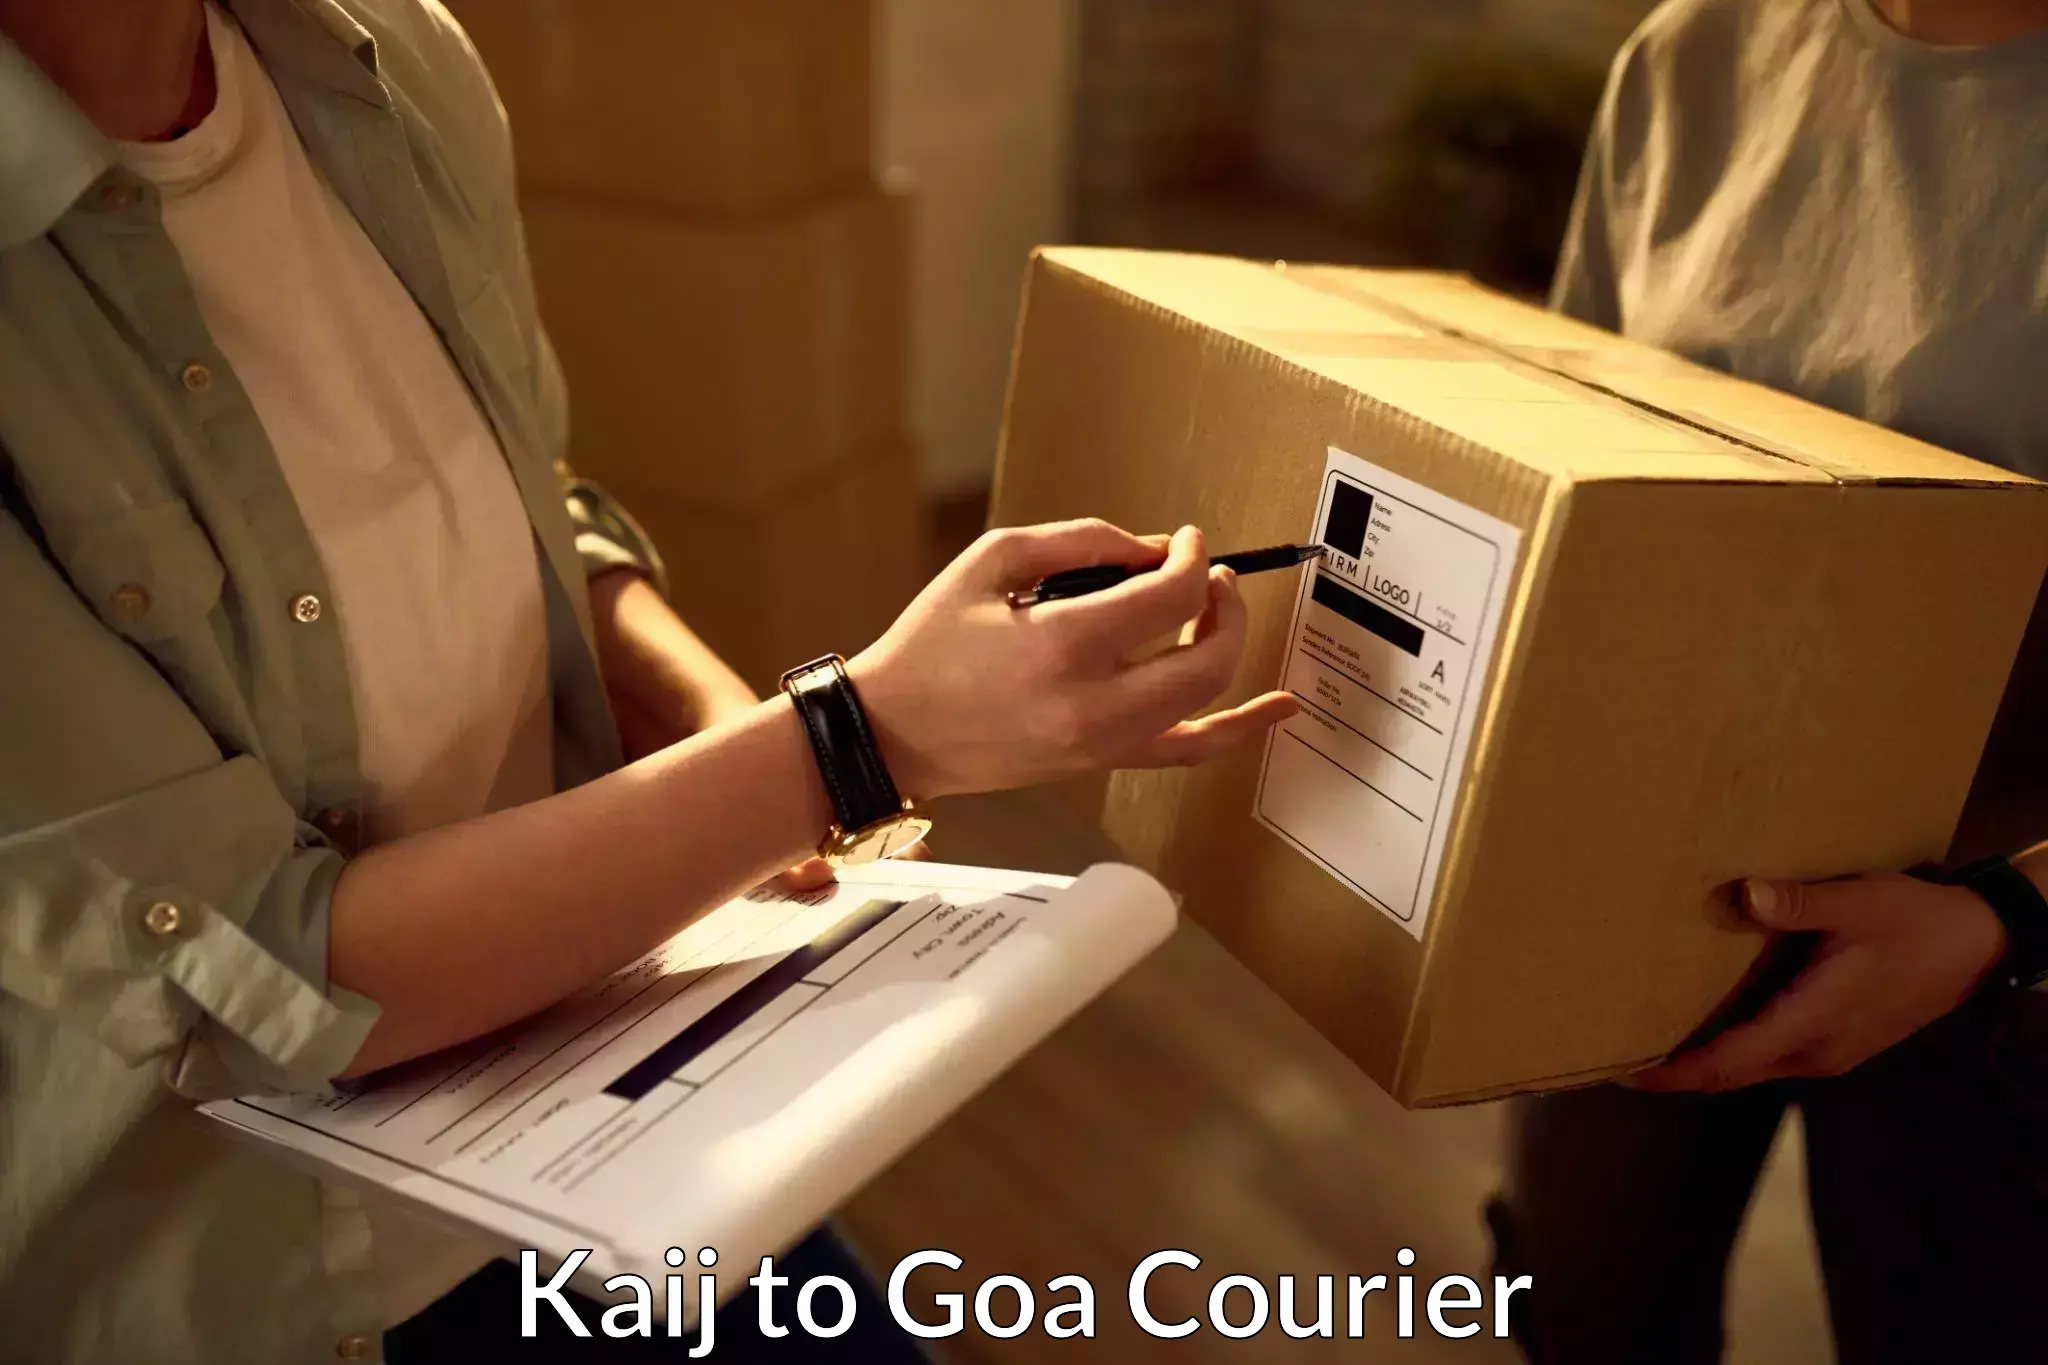 Efficient parcel service Kaij to Goa